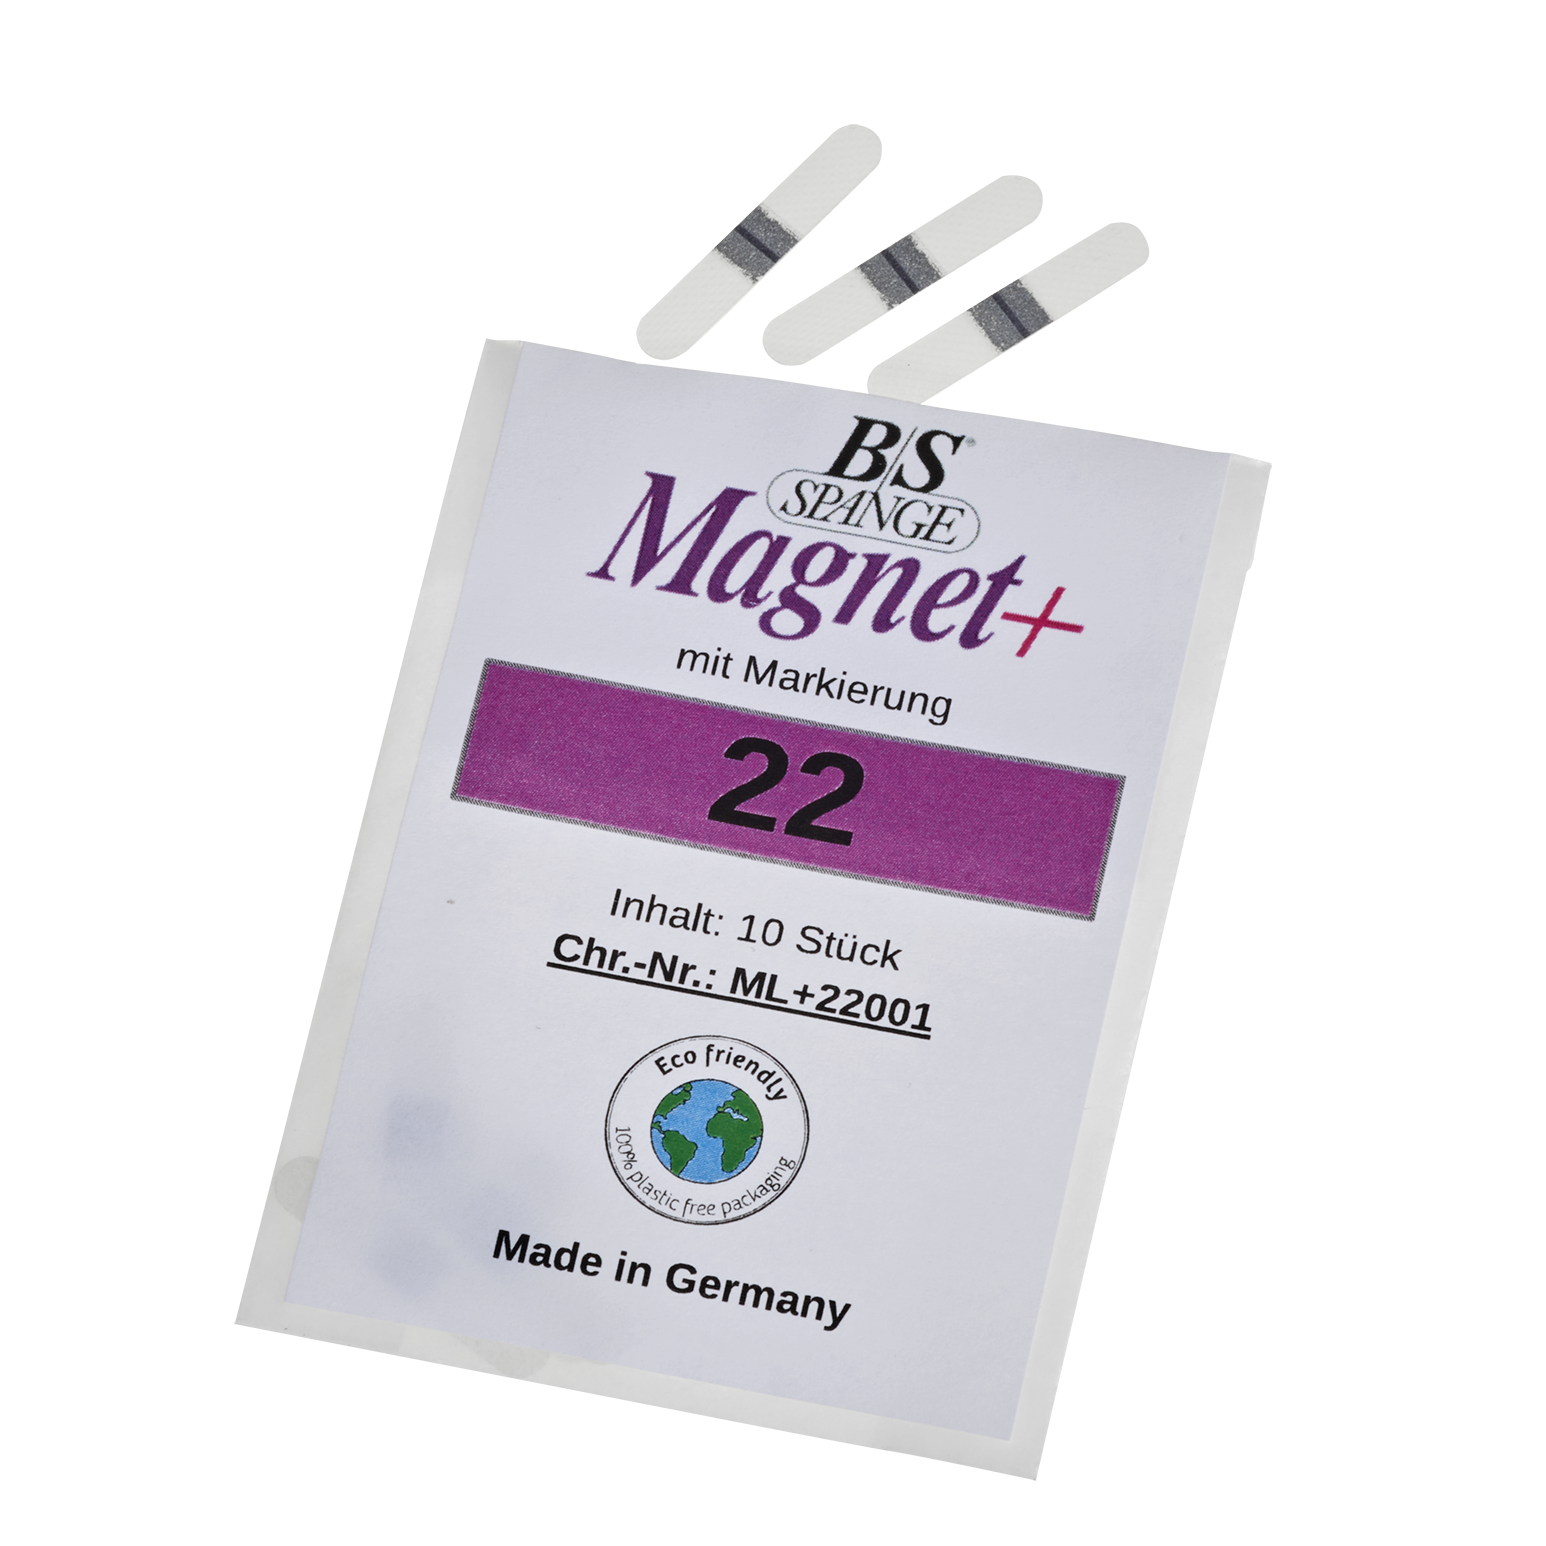 b-s-magnet-spangen-mit-markierung_12016